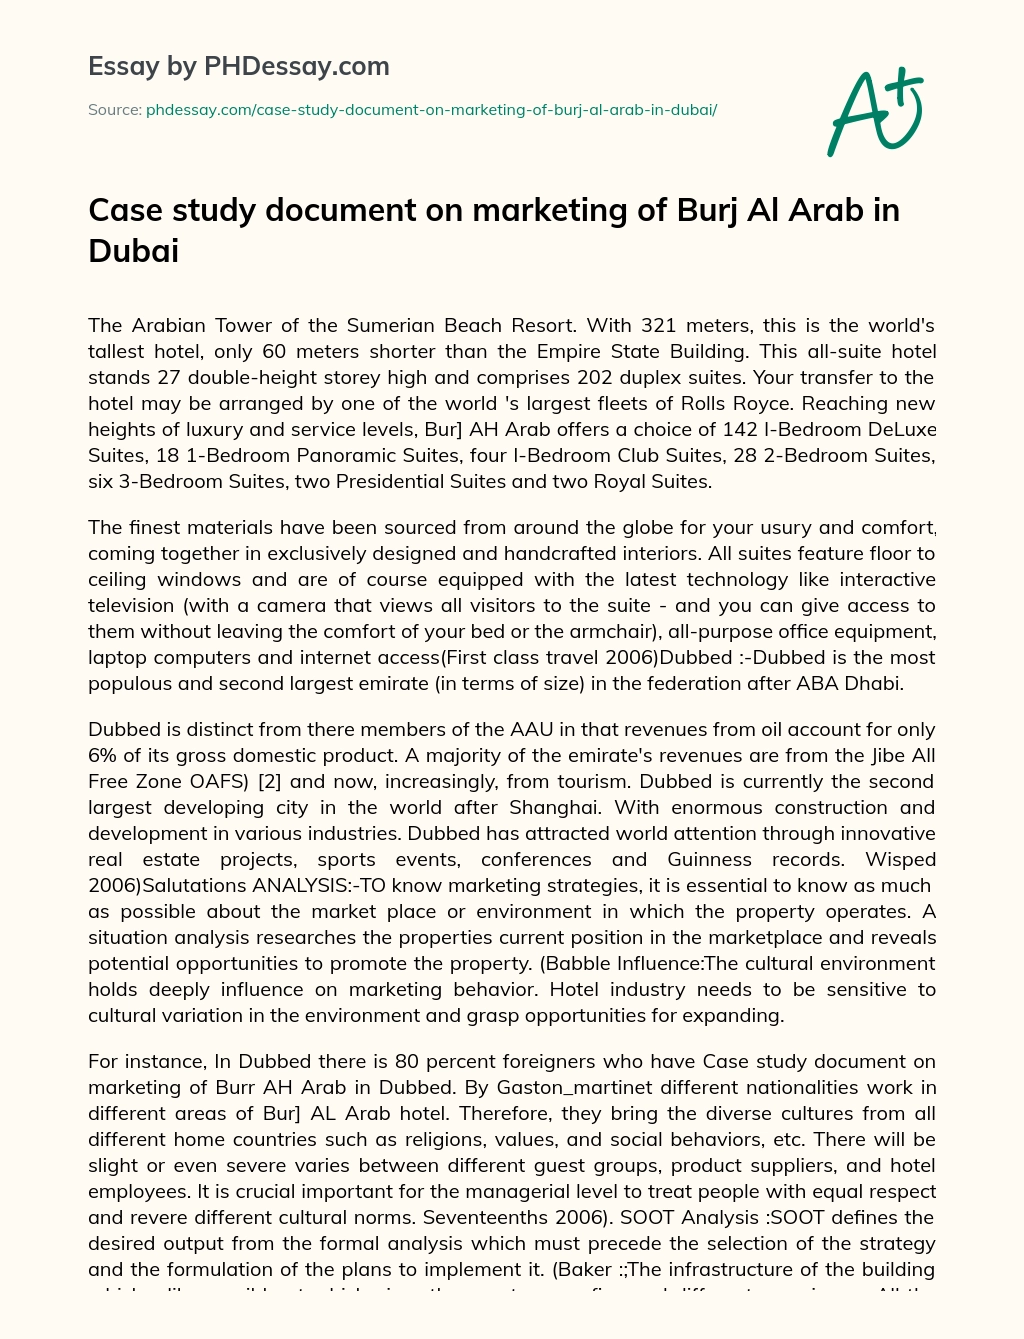 Case study document on marketing of Burj Al Arab in Dubai essay